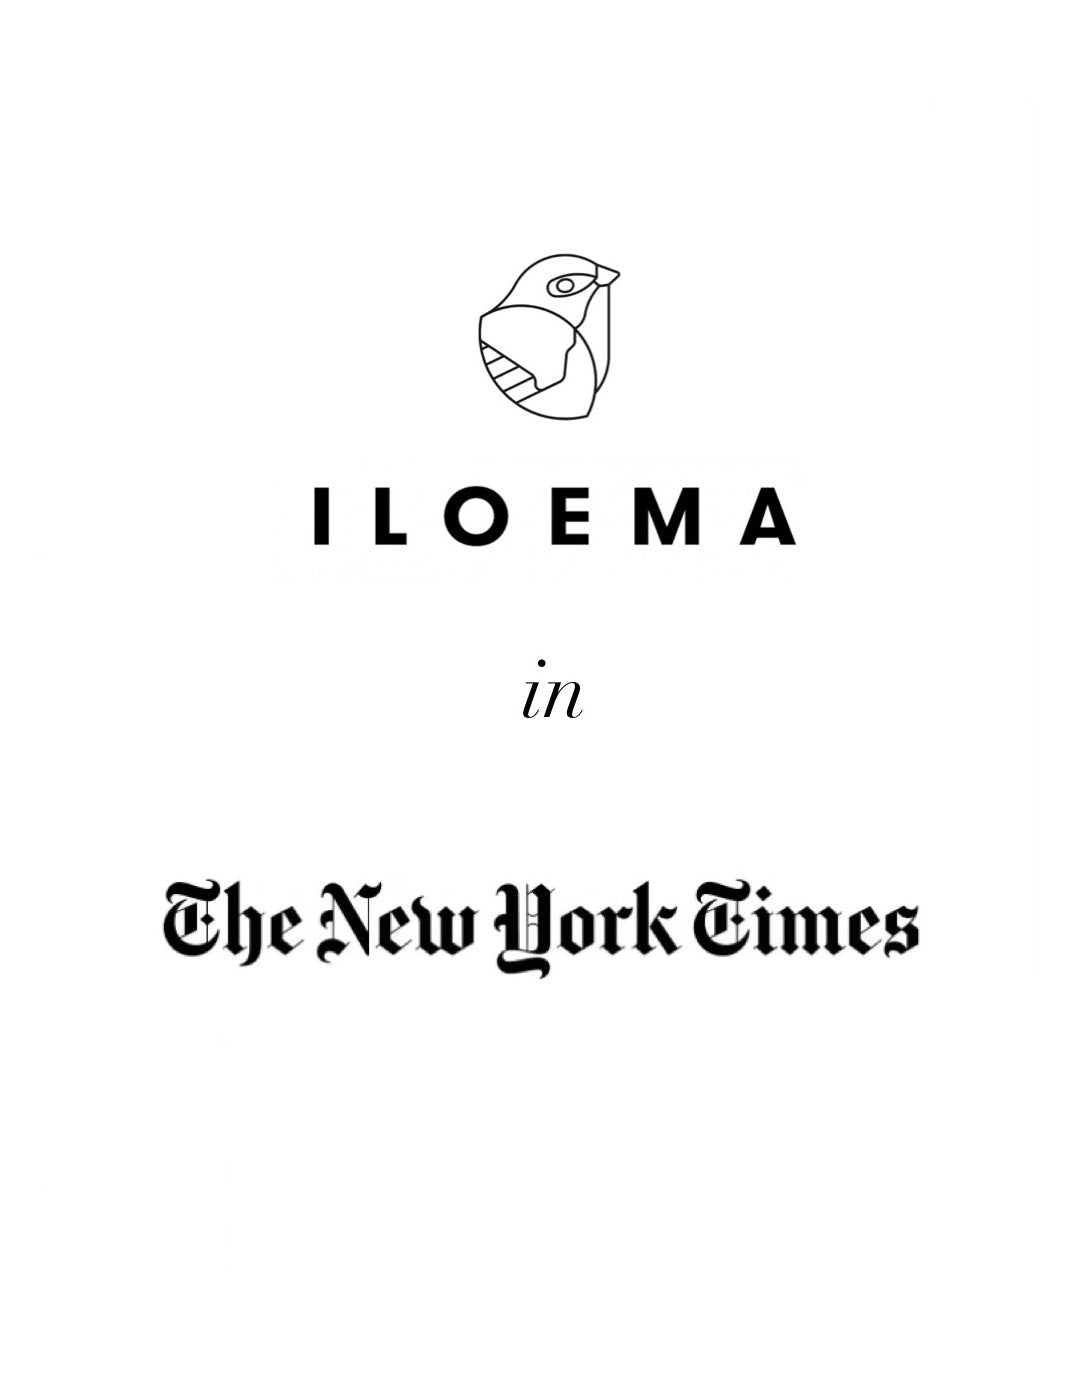 Iloema en el New York Times